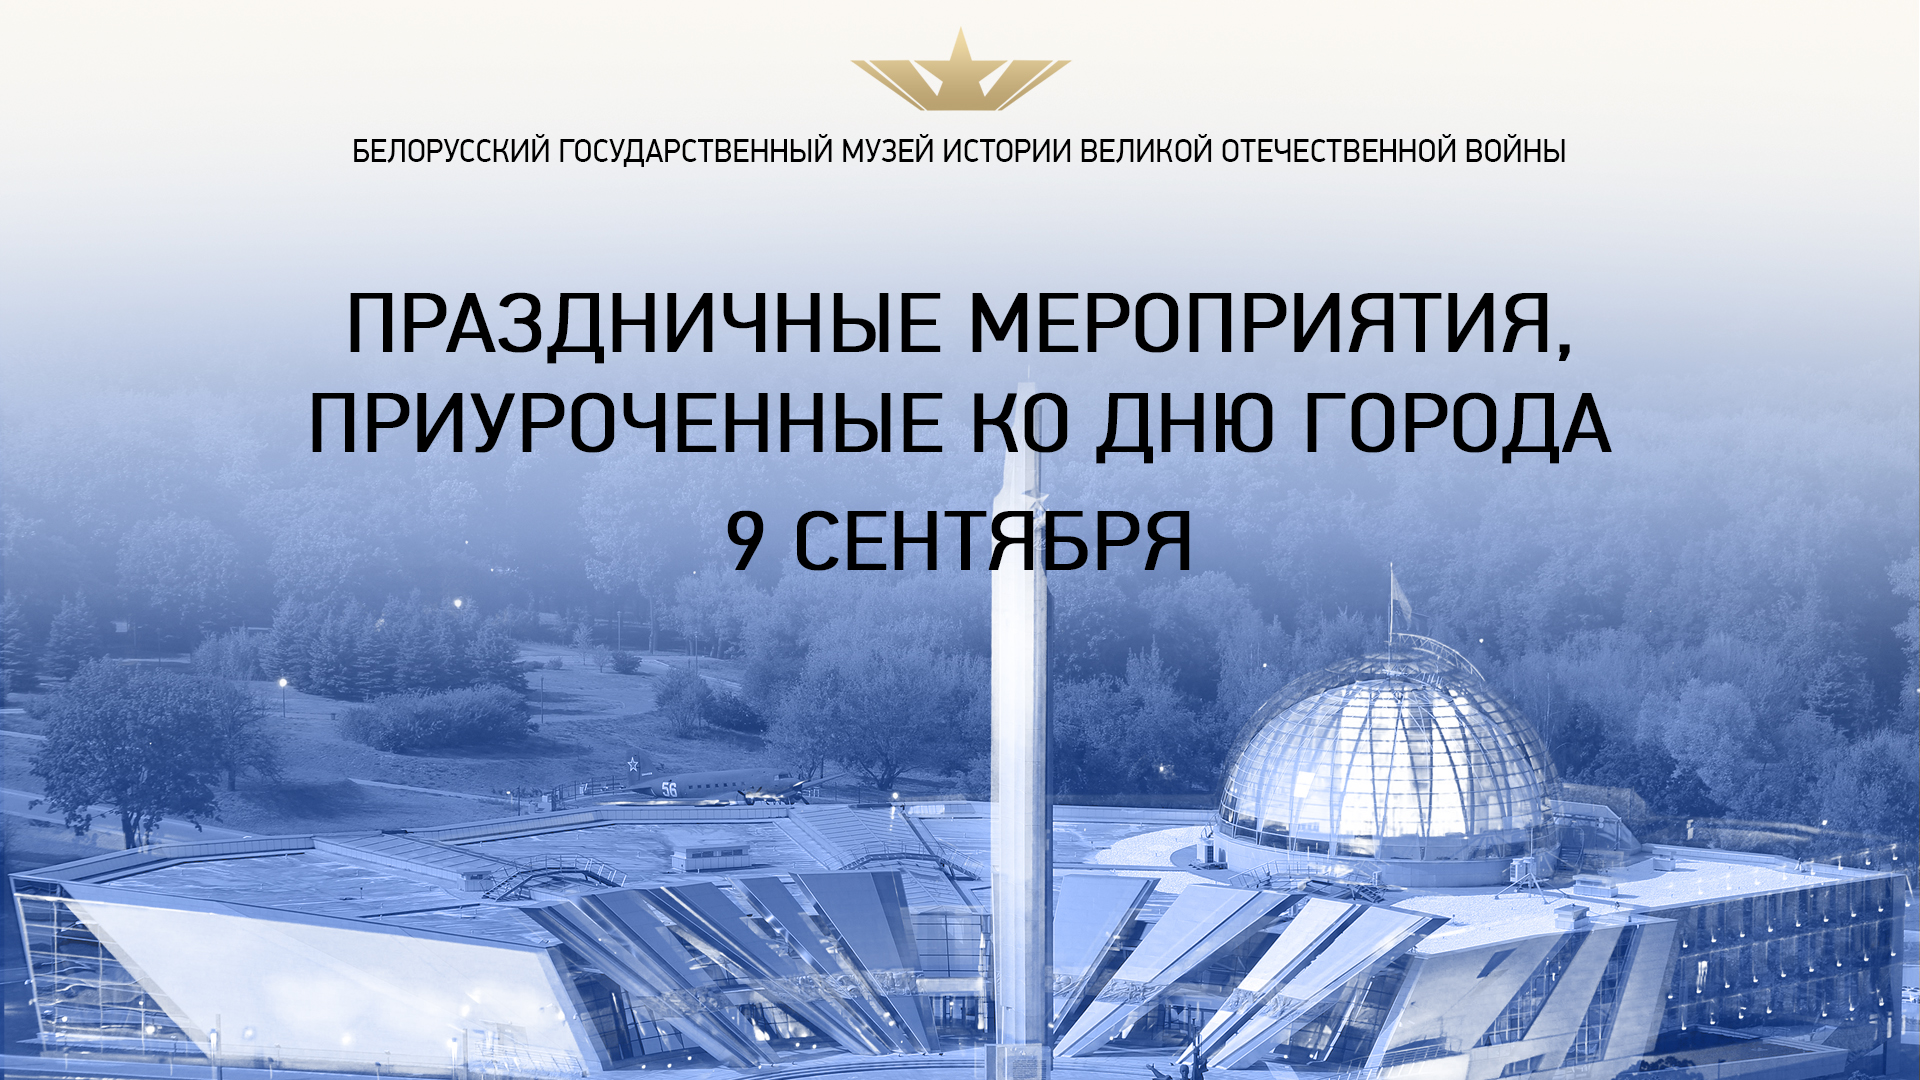  956-летие города Минска в Белорусском государственном музее истории Великой Отечественной войны